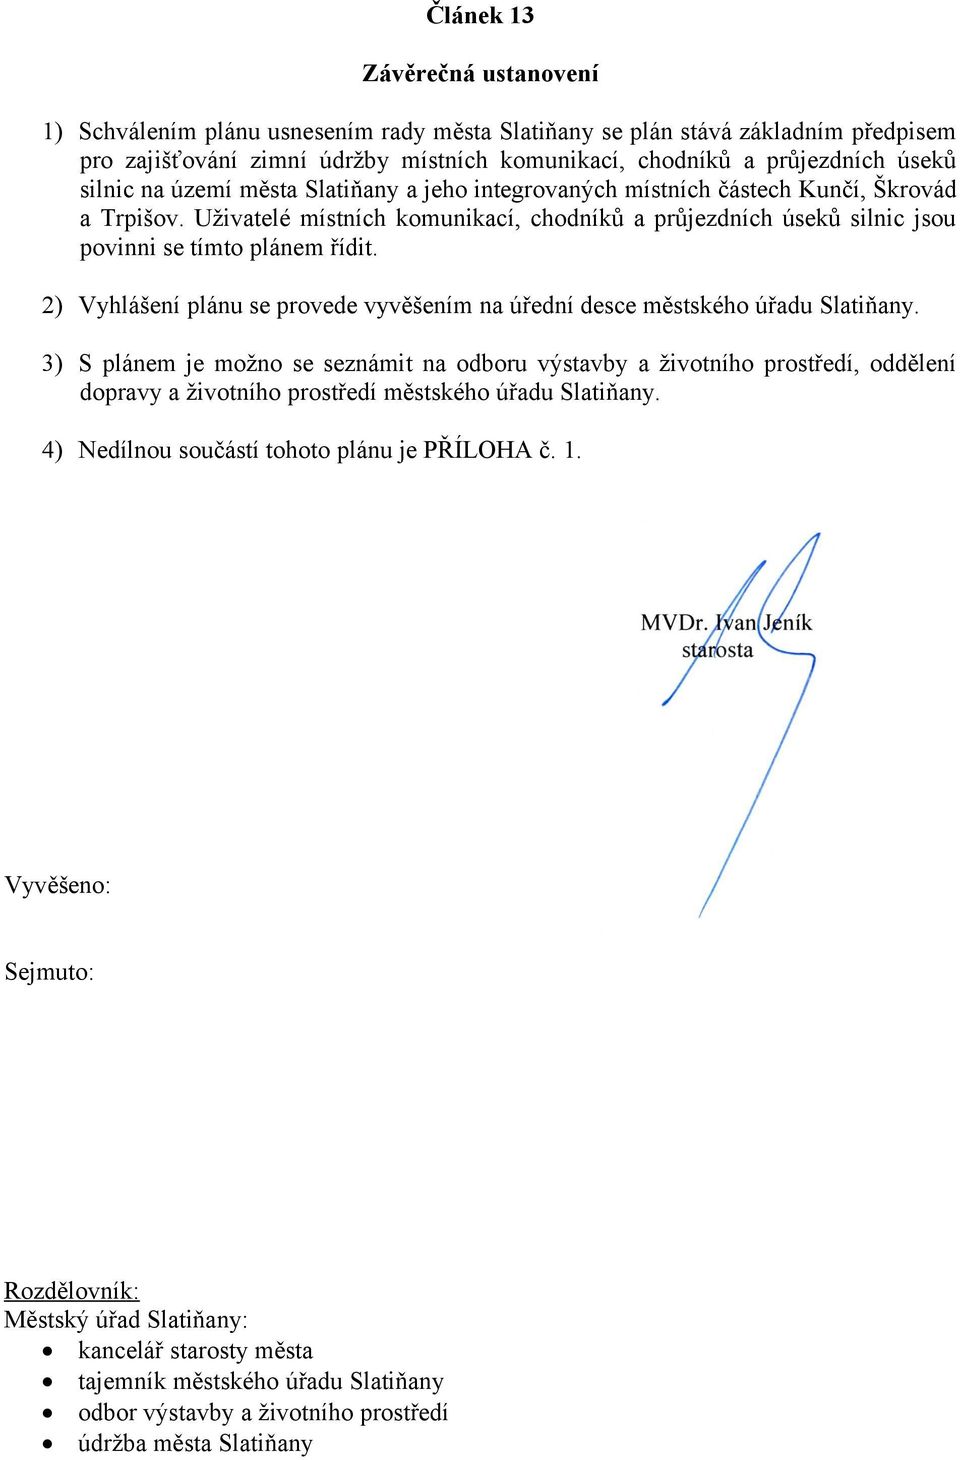 2) Vyhlášení plánu se provede vyvěšením na úřední desce městského úřadu Slatiňany.